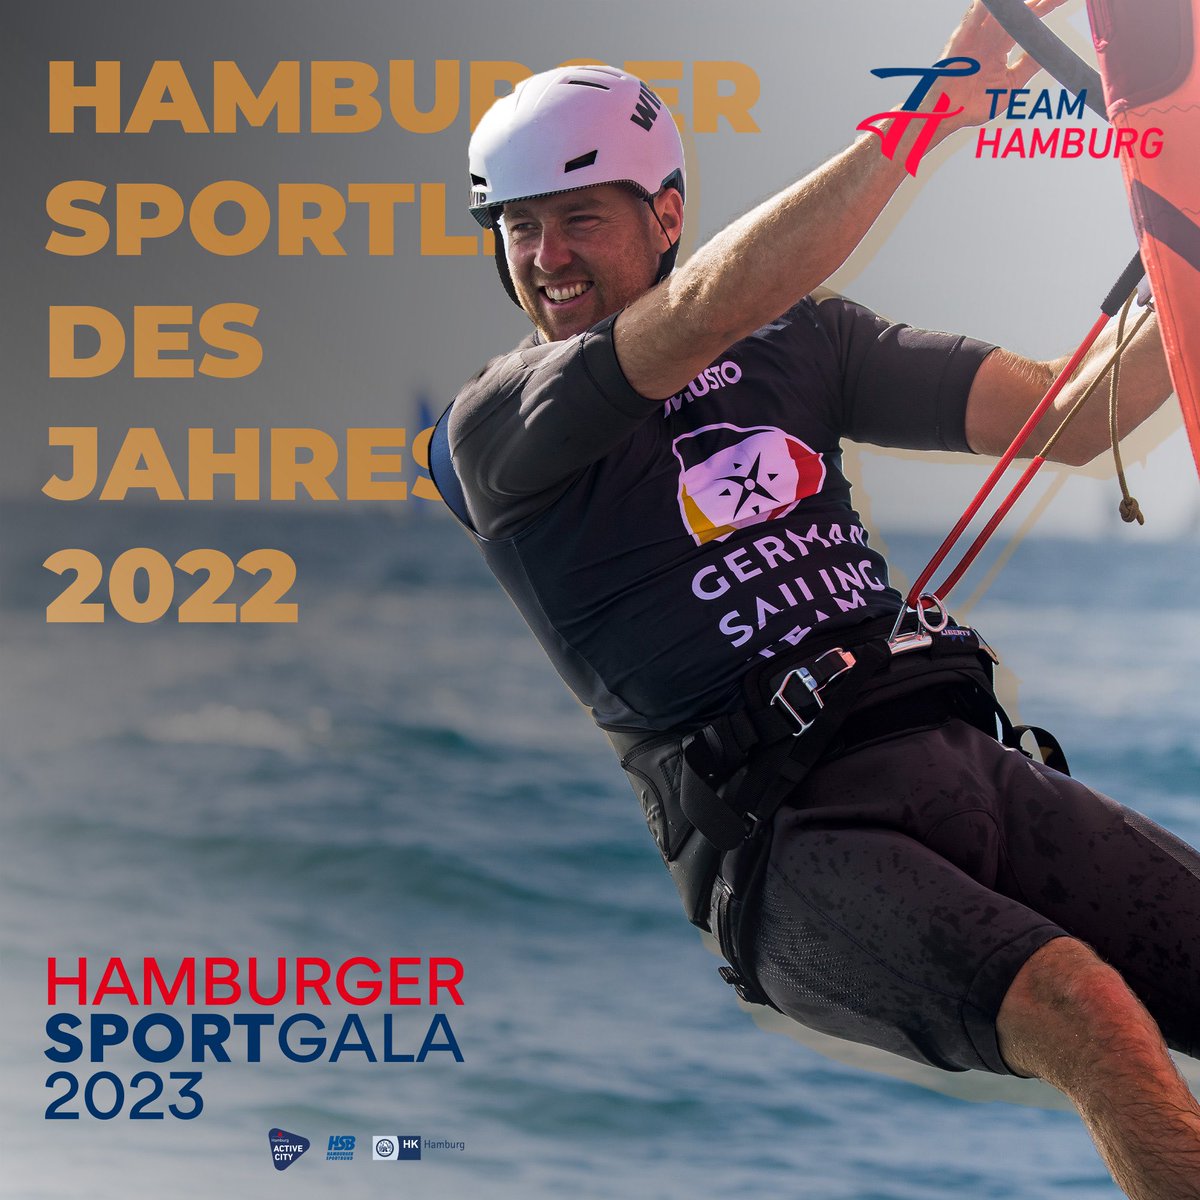 #TEAMHAMBURG Athlet Sebastian Kördel ist Hamburger Sportler des Jahres 2022! 

Der Windsurfer ist 2022 Weltmeister in der iQ-FOiL-Klasse geworden und beeindruckte dabei mit einer dominanten Leistung.

Glückwunsch!

#hamburgersportgala #sportgala2023

Foto: DSV/Sailingenergy